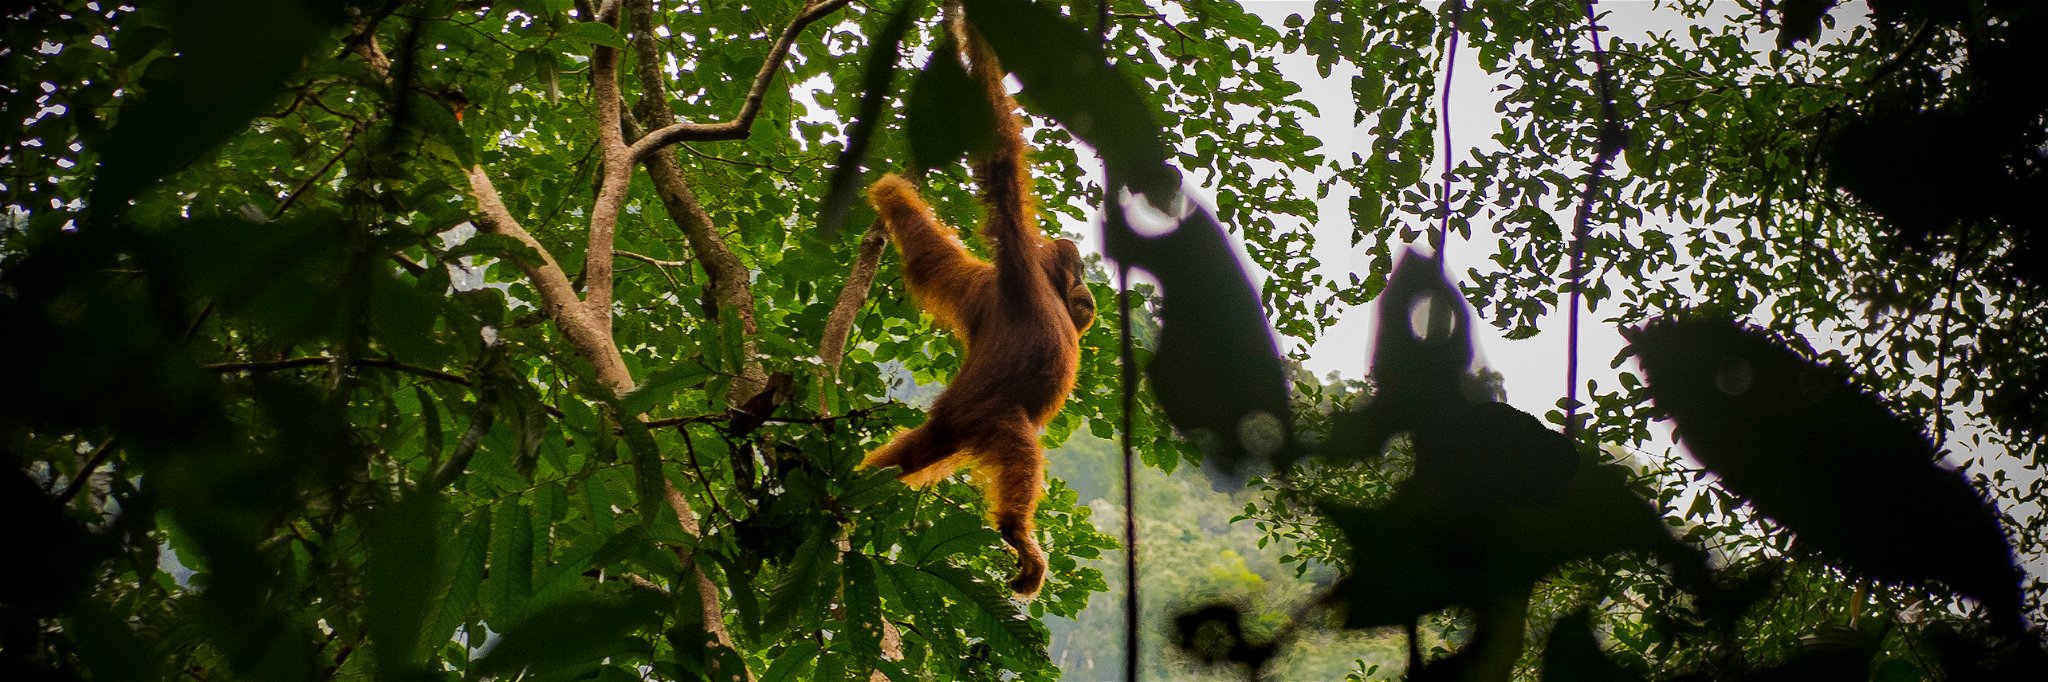 Orangutans in the jungle of Gunung Leuser National Park, North Sumatra